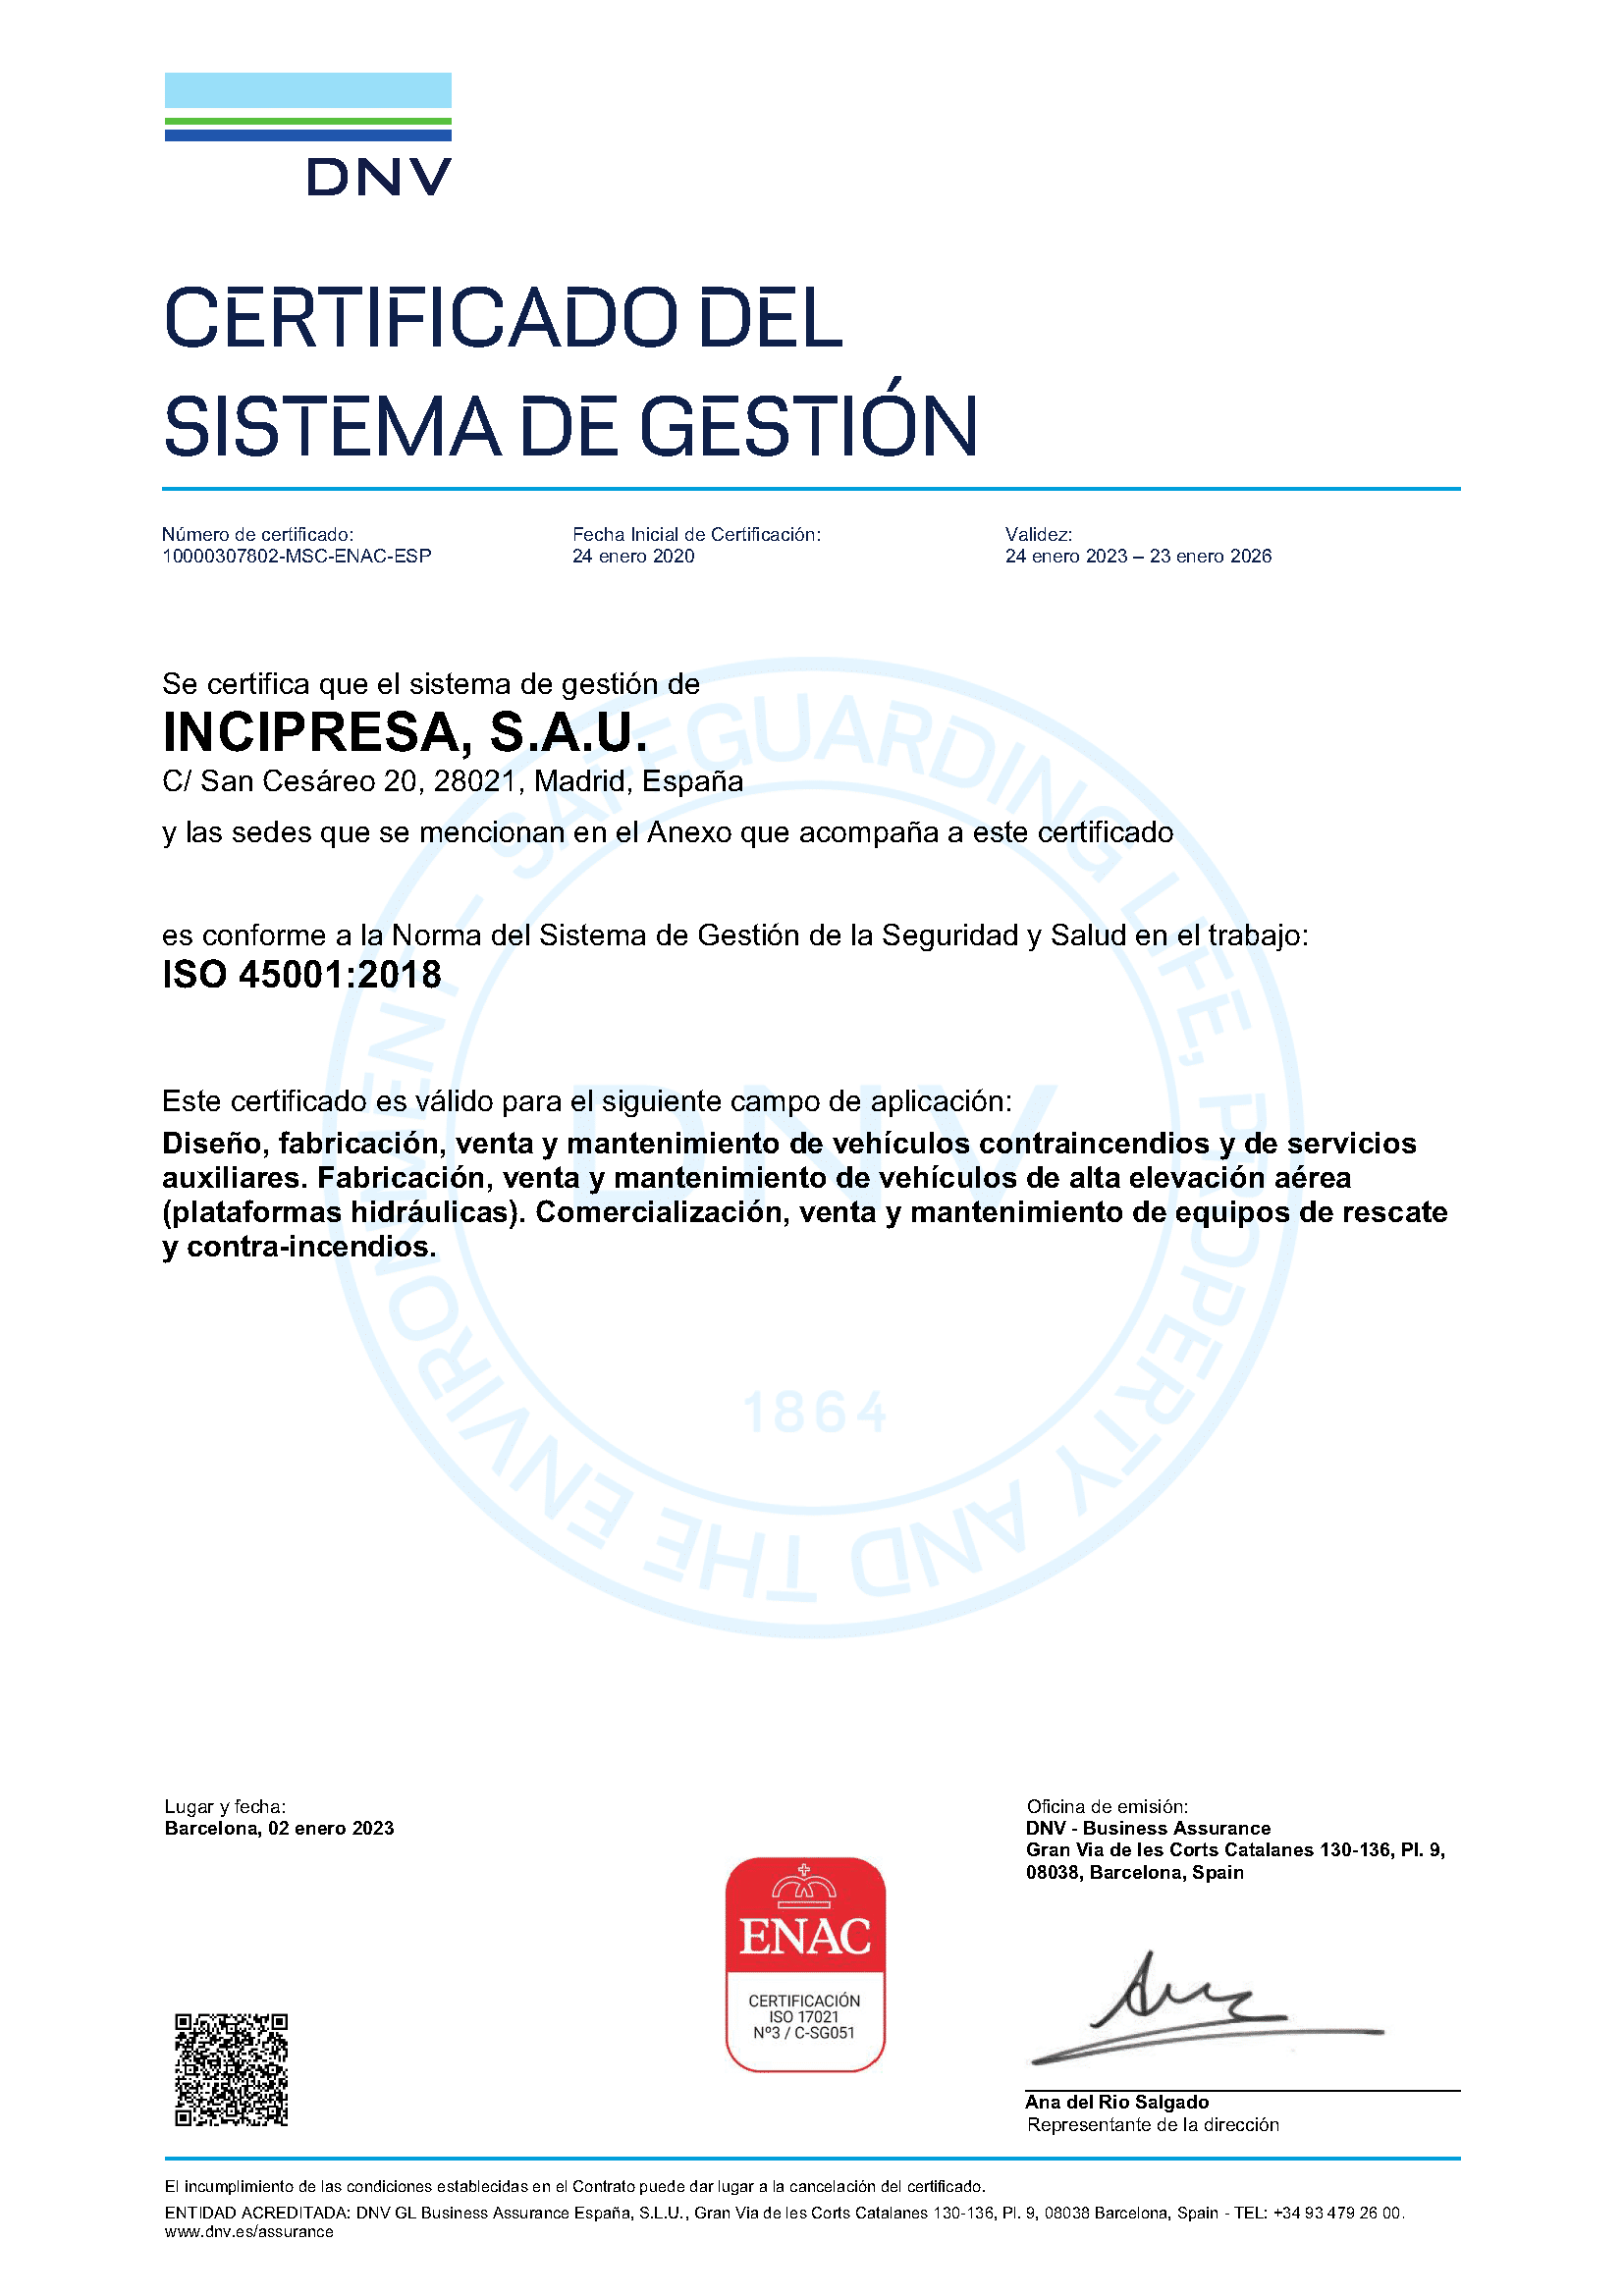 Certificado ISO 45001INCIPRESA 23 de enero 2026 ESP P1